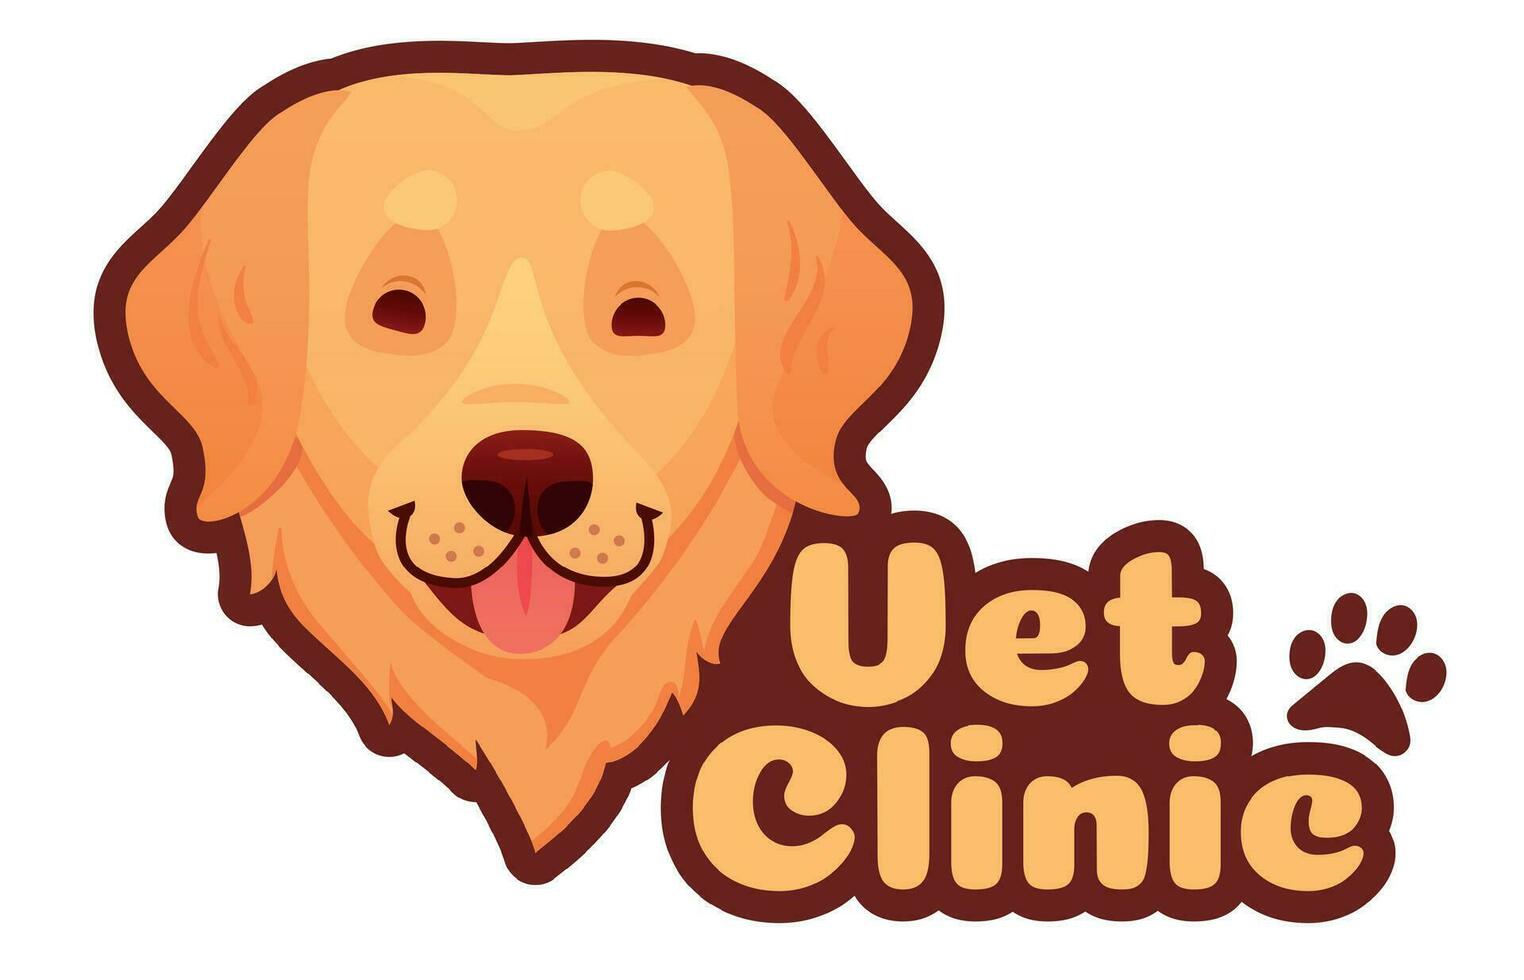 dierenarts kliniek en veterinair logo met hond gezicht. huisdier Gezondheid zorg in ziekenhuis, huiselijk dier geneeskunde logo vector